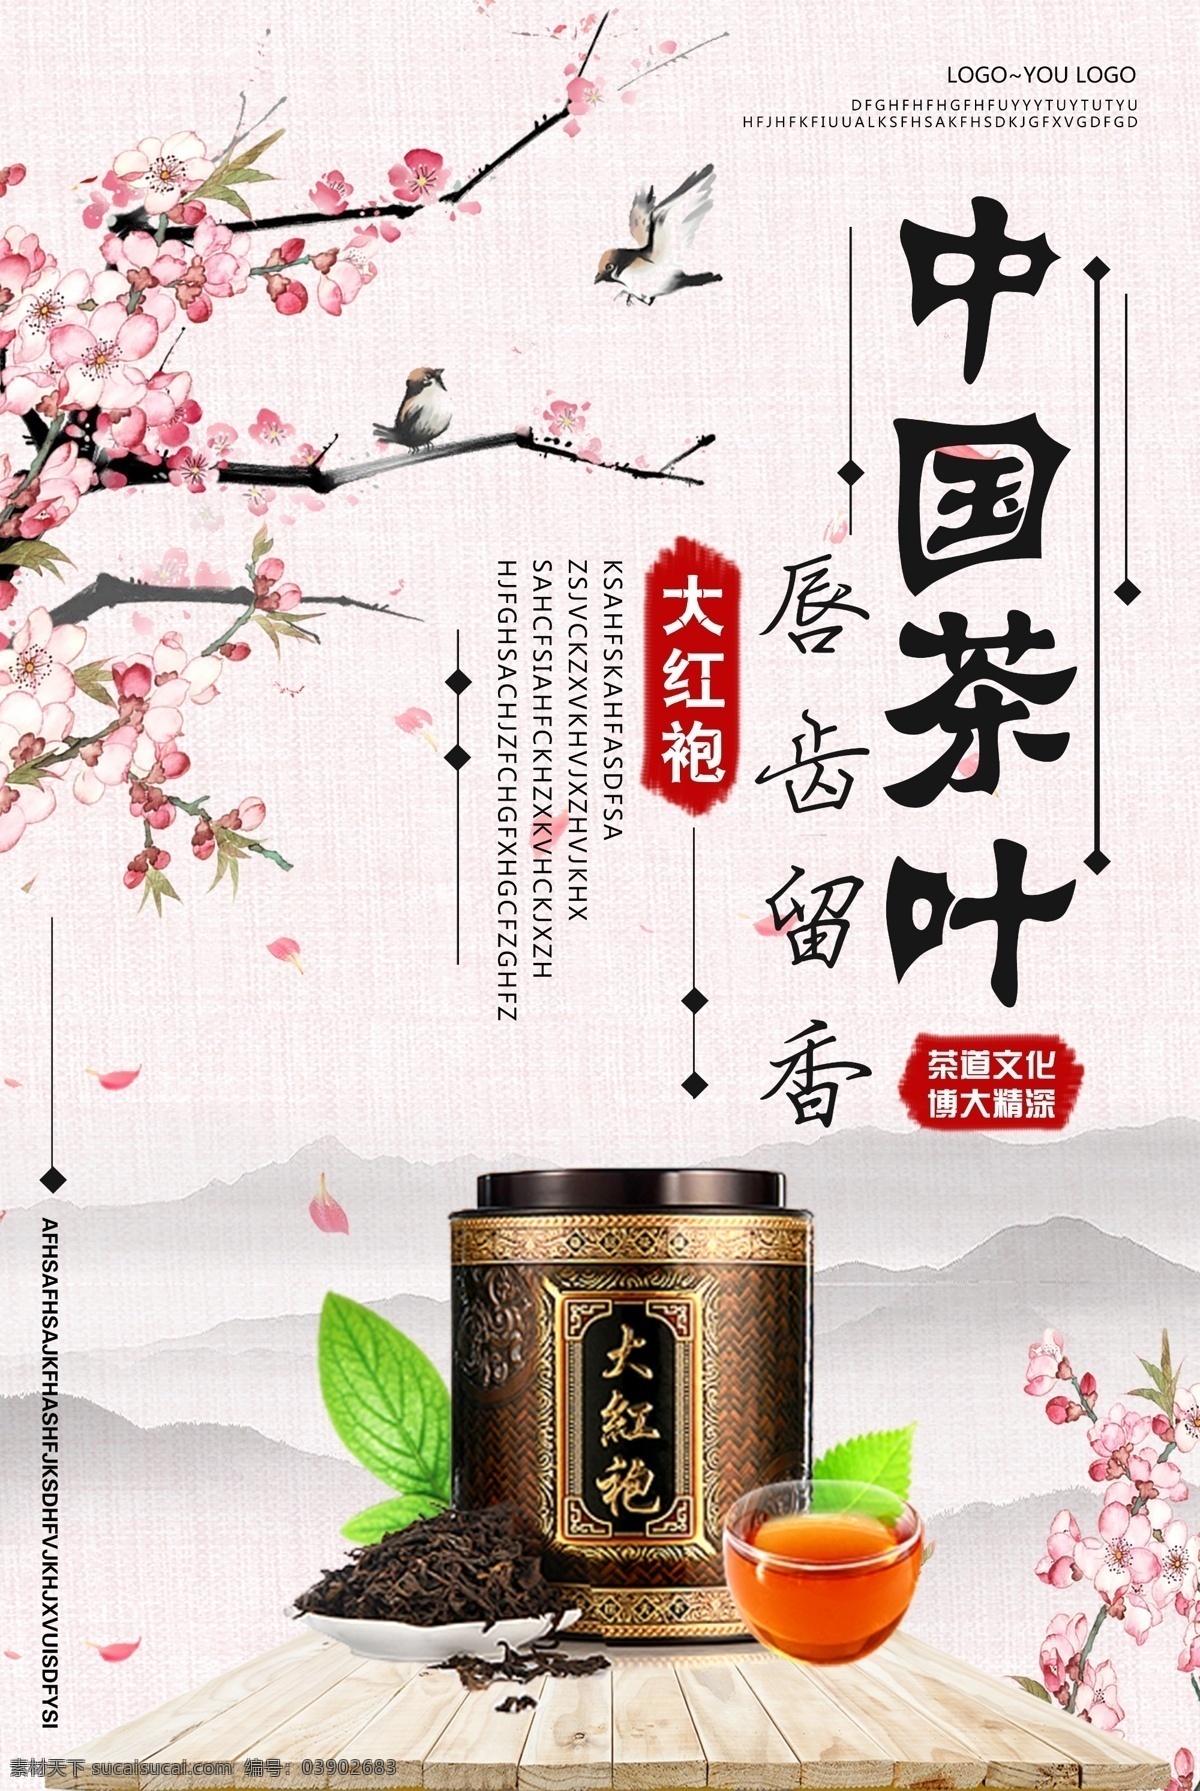 大红袍 茶叶 海报 中国风 茶道 茶艺 品茶